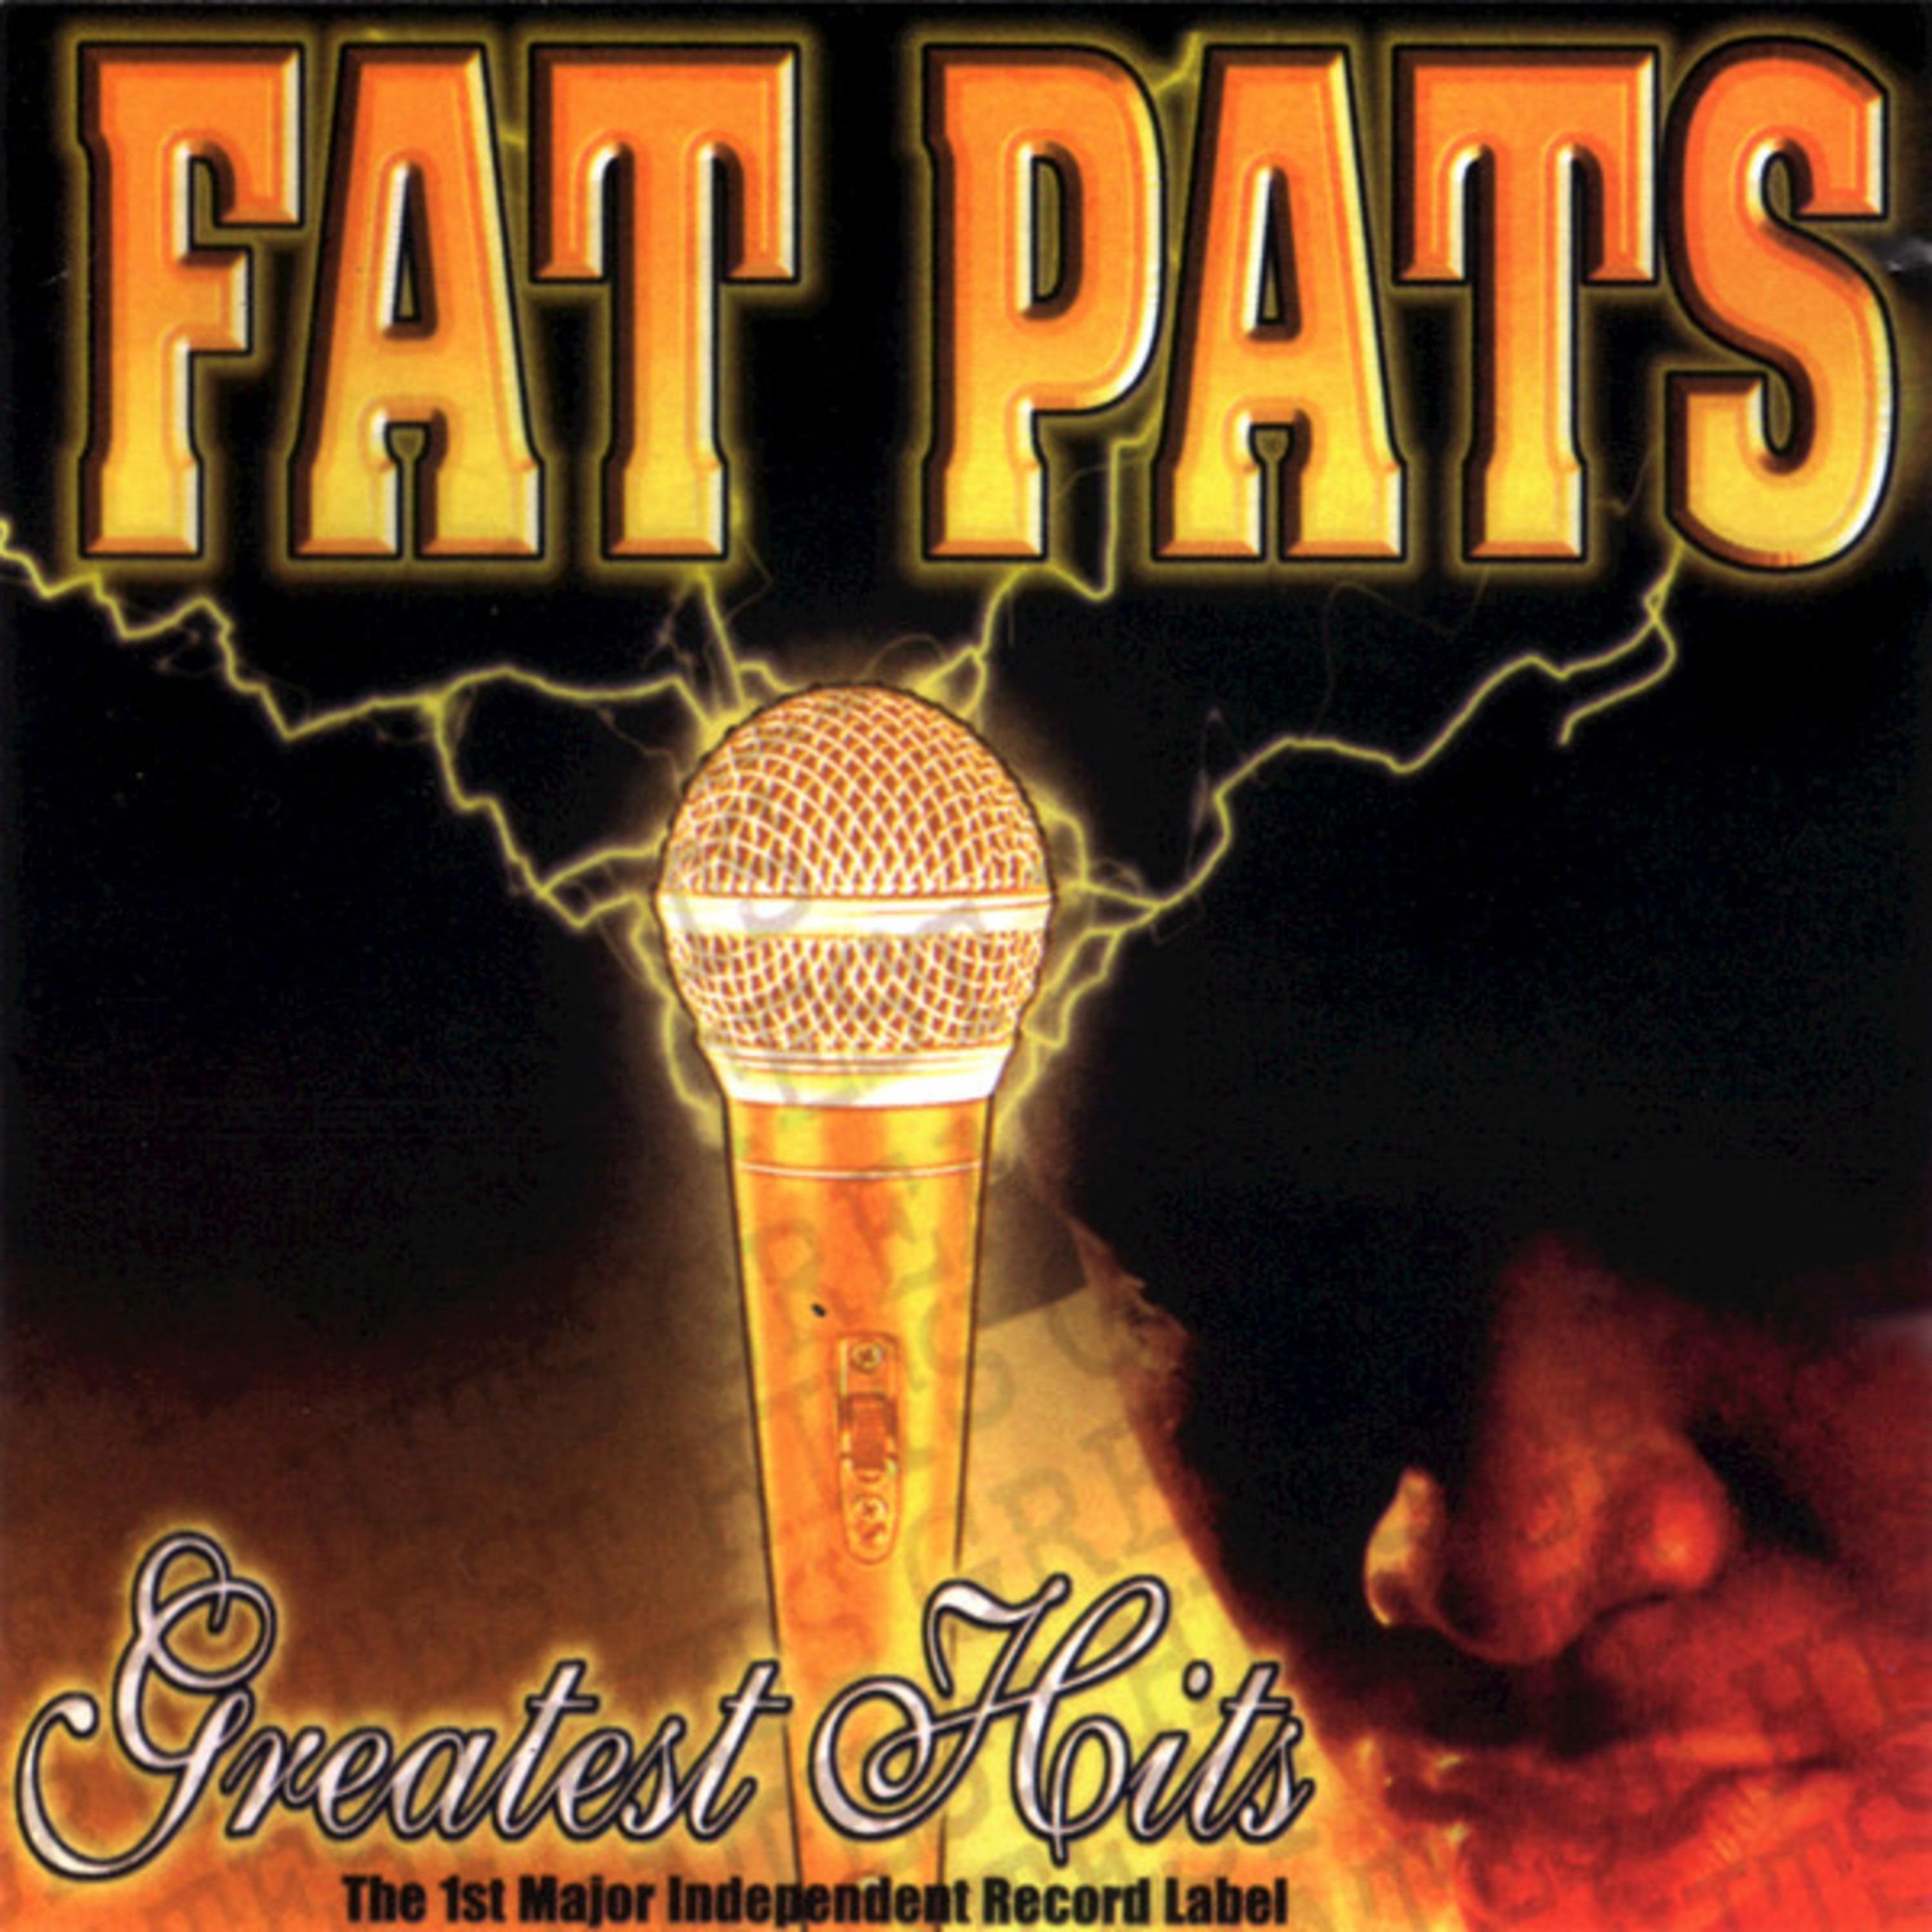 Fat Pat - Superstar